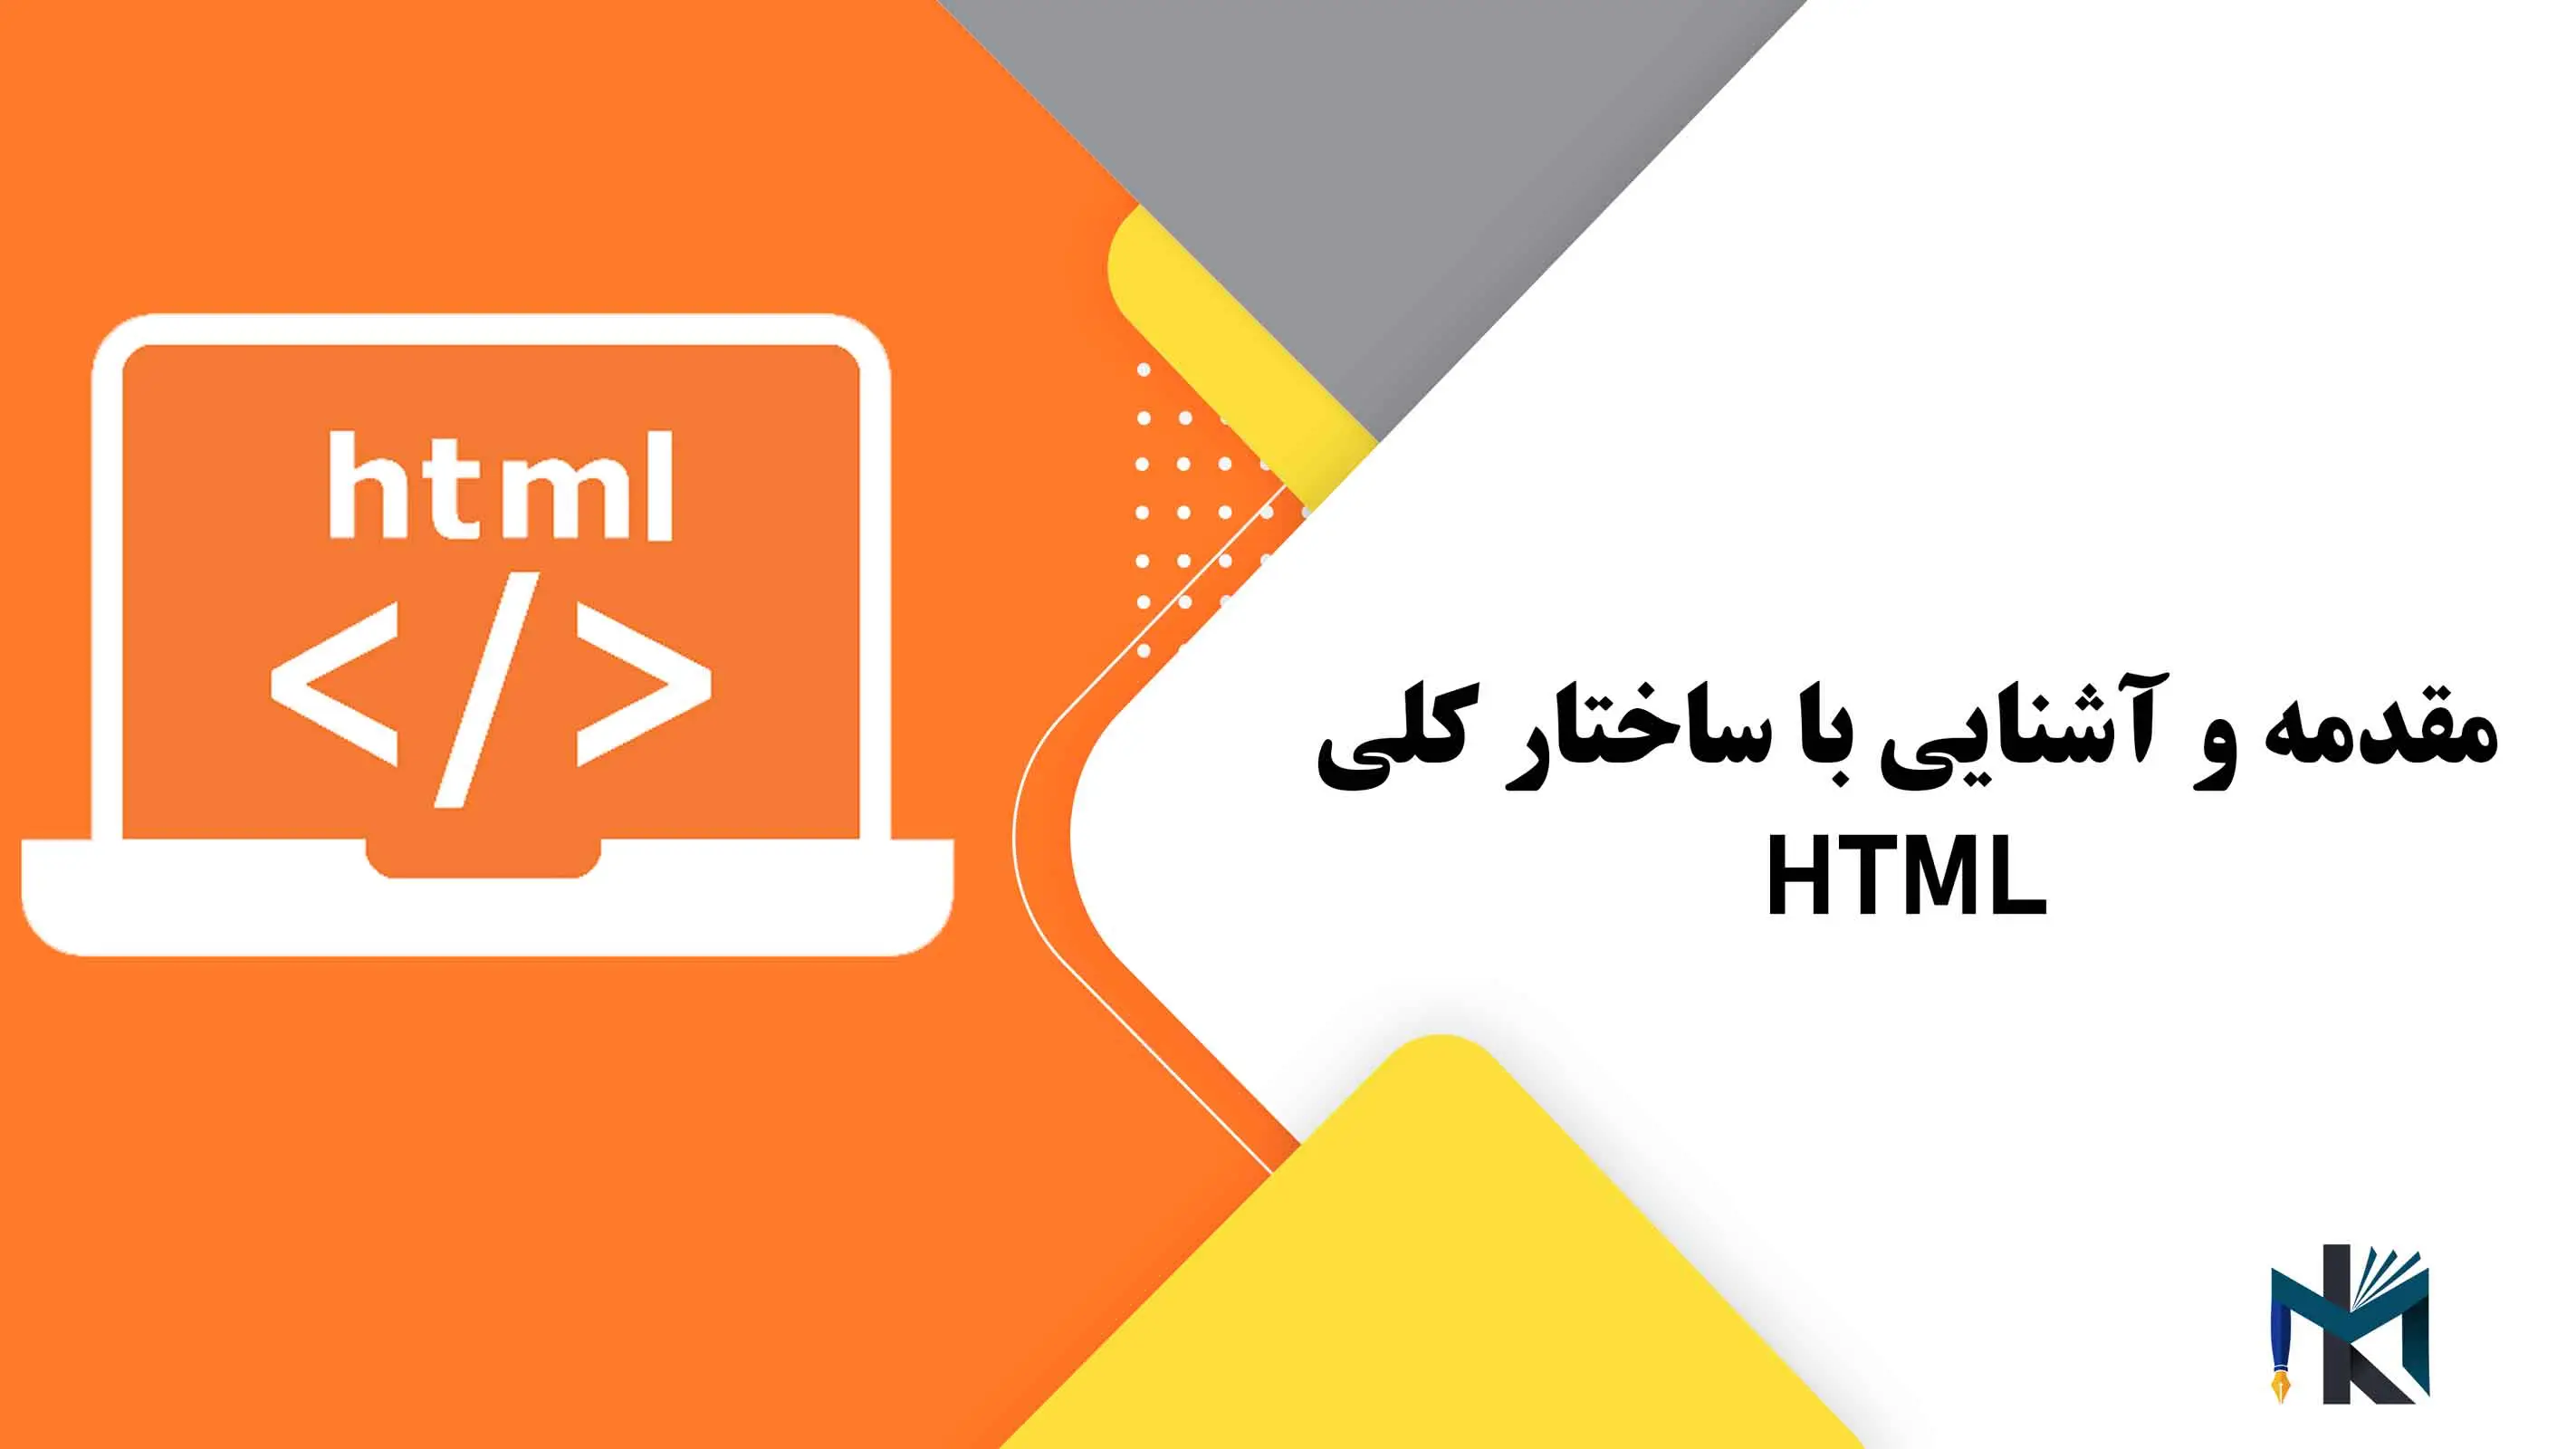 درس اول: مقدمه و آشنایی با ساختار کلی HTML